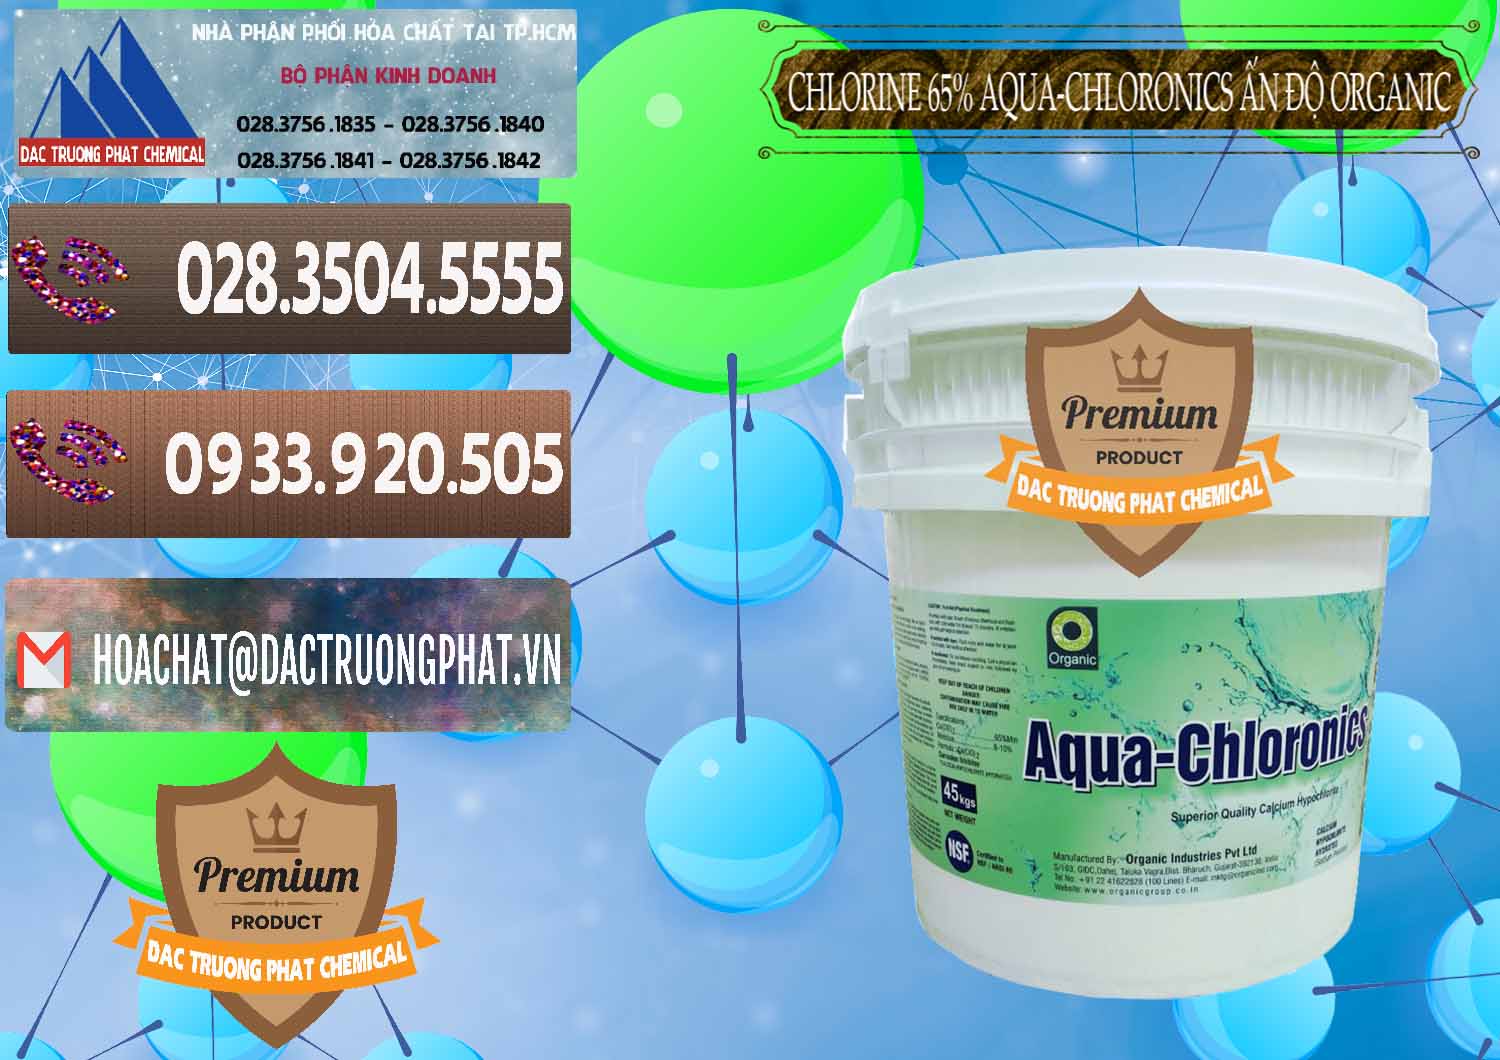 Nơi cung cấp & bán Chlorine – Clorin 65% Aqua-Chloronics Ấn Độ Organic India - 0210 - Công ty chuyên kinh doanh và cung cấp hóa chất tại TP.HCM - hoachatviet.net